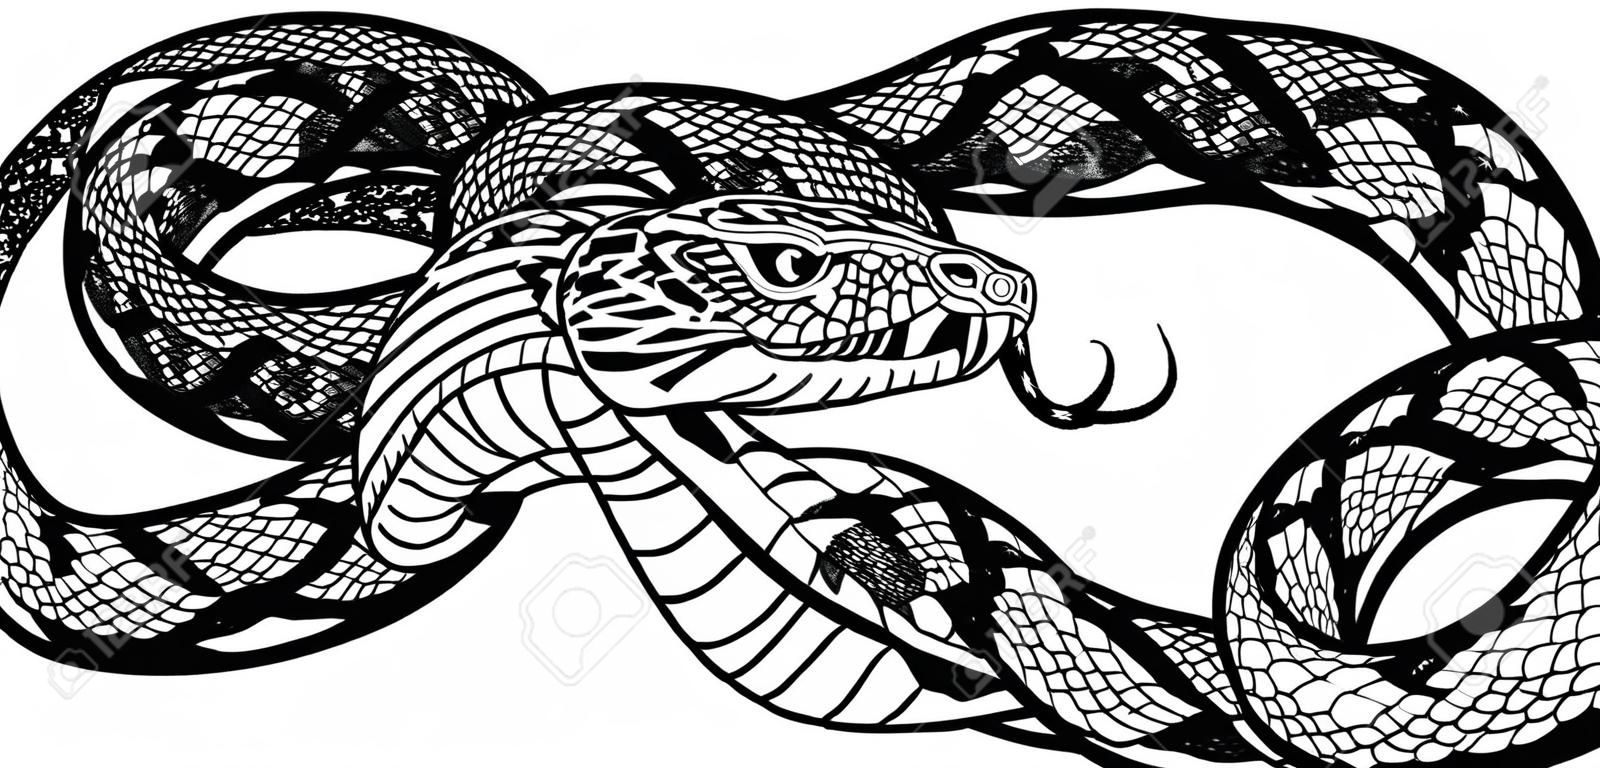 Coiled agressieve slang. Zwart-wit tatoeage stijl vector illustratie